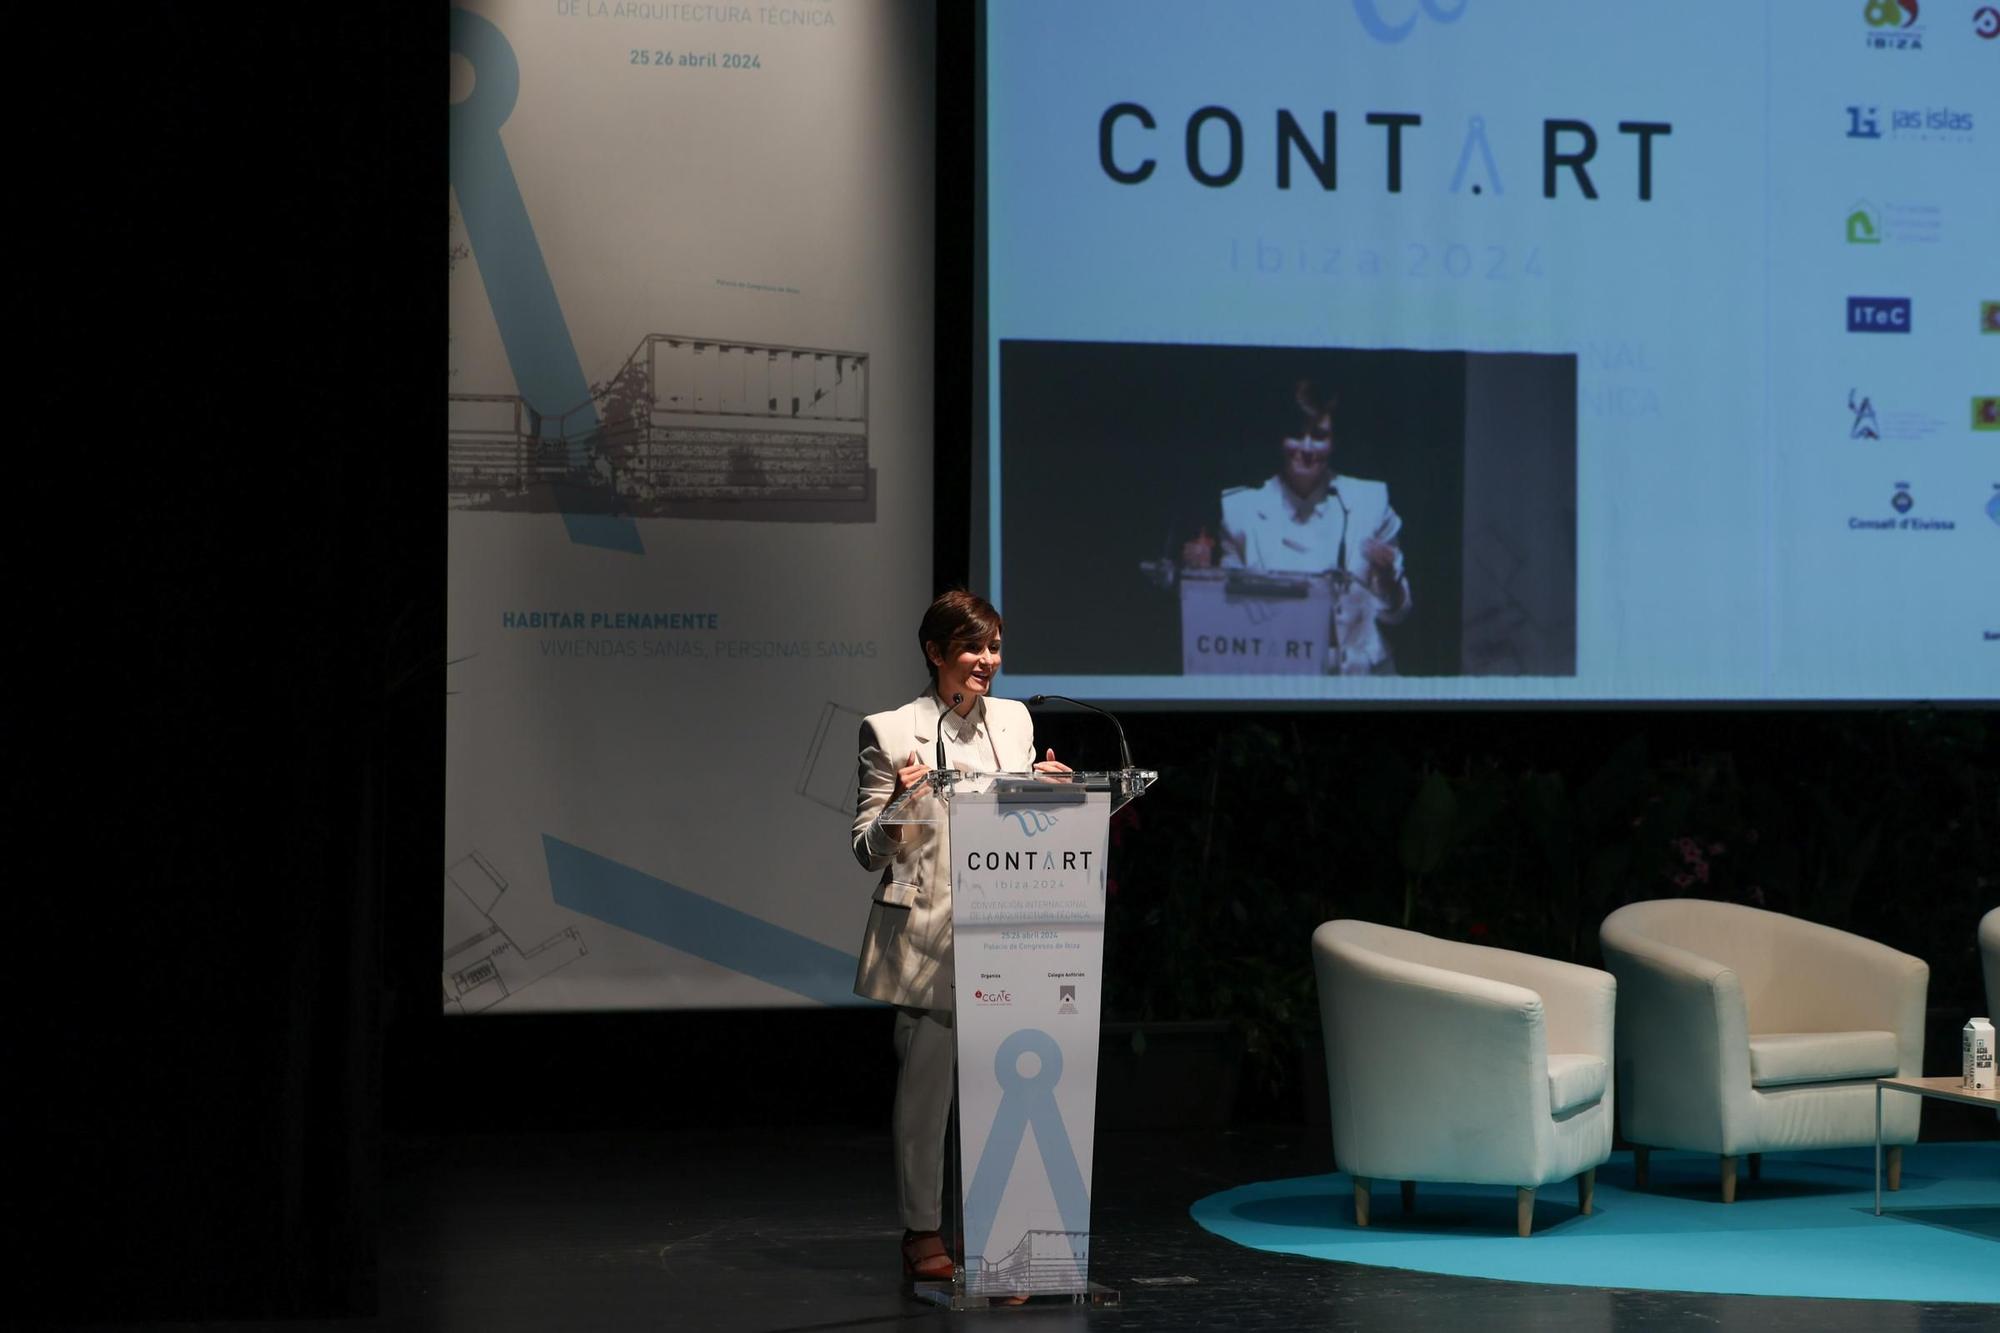 Galería: La ministra de Vivenda, Isabel Rodríguez García, en el congreso de Arquitectura Técnica de Ibiza